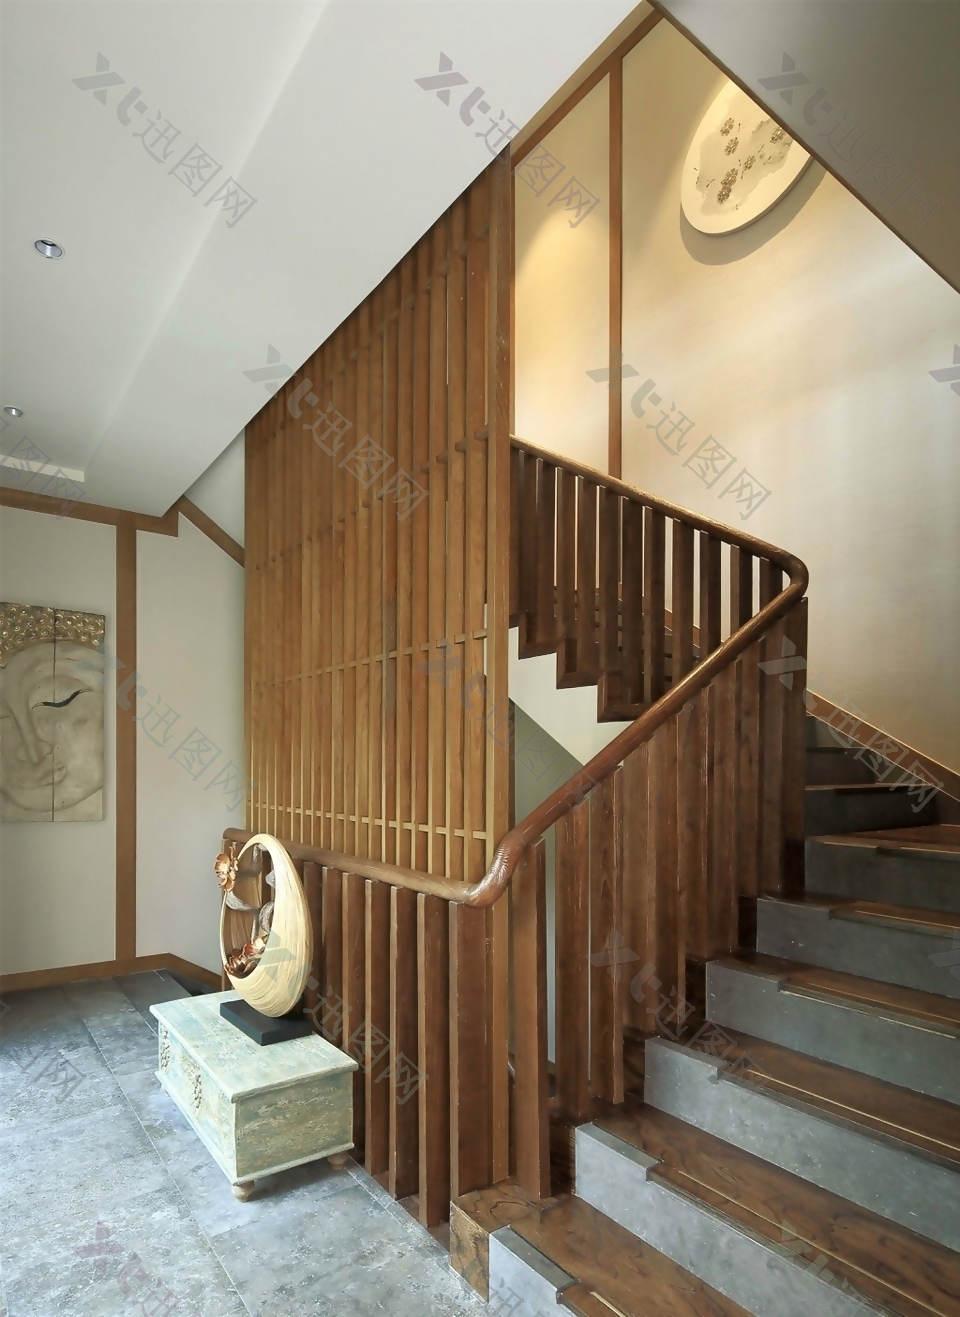 日式风室内设计楼梯效果图JPG源文件